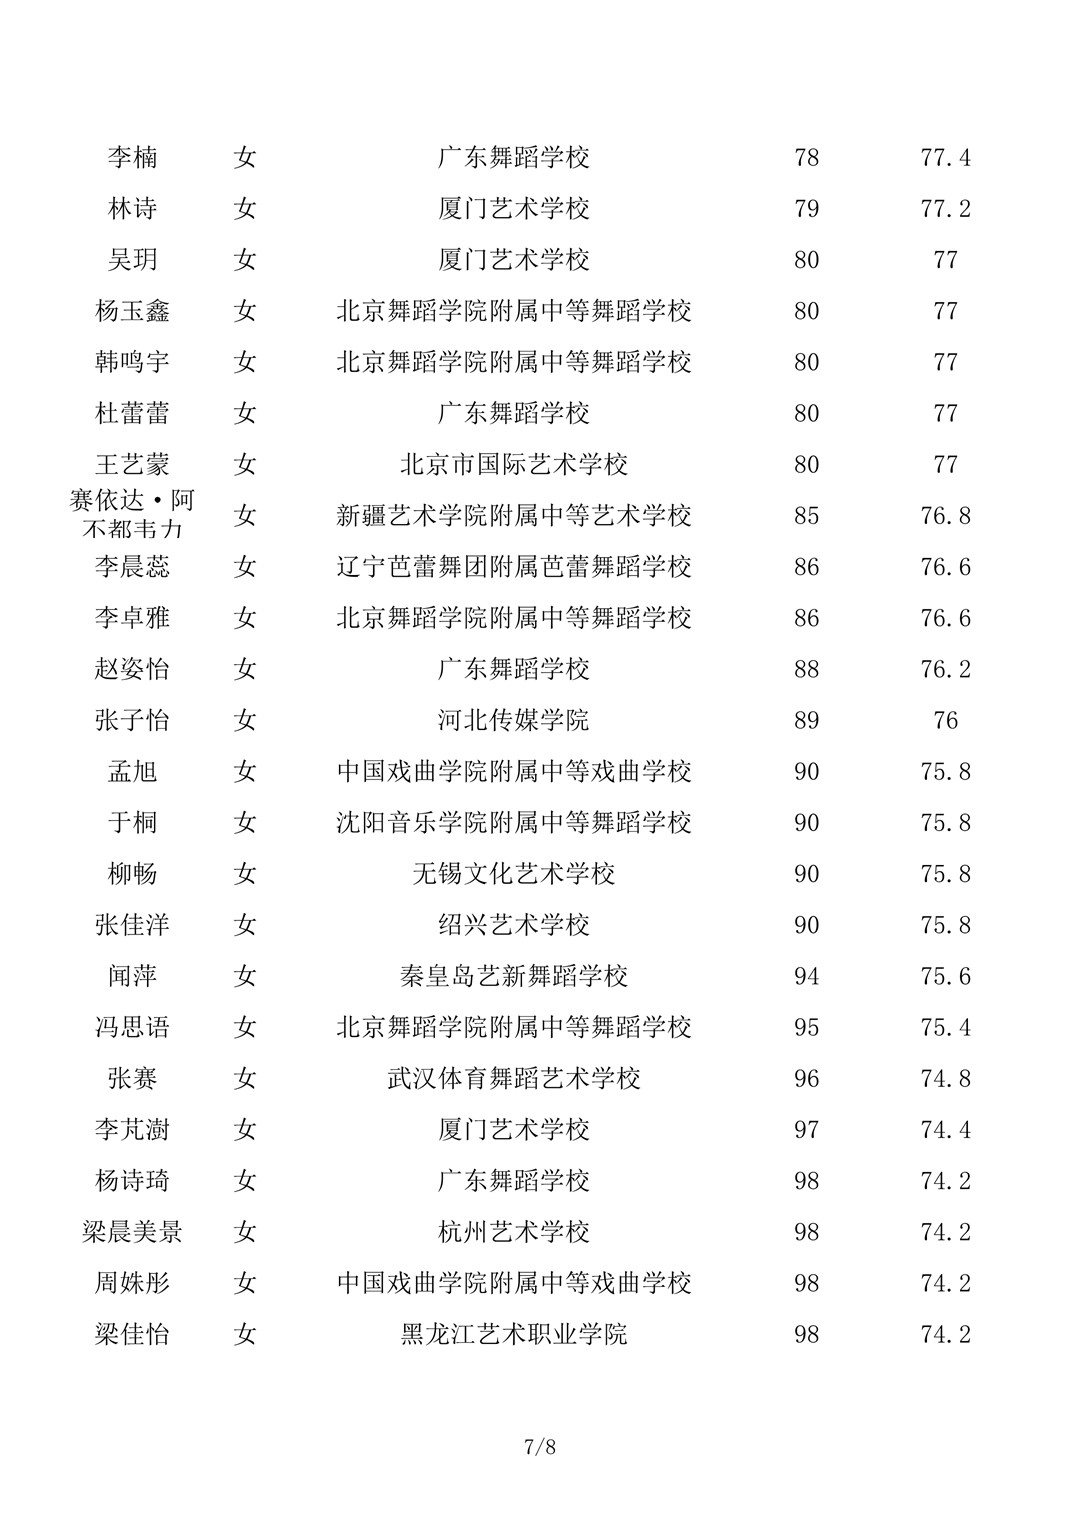 2020年北京舞蹈学院本科专业校考合格名单公示